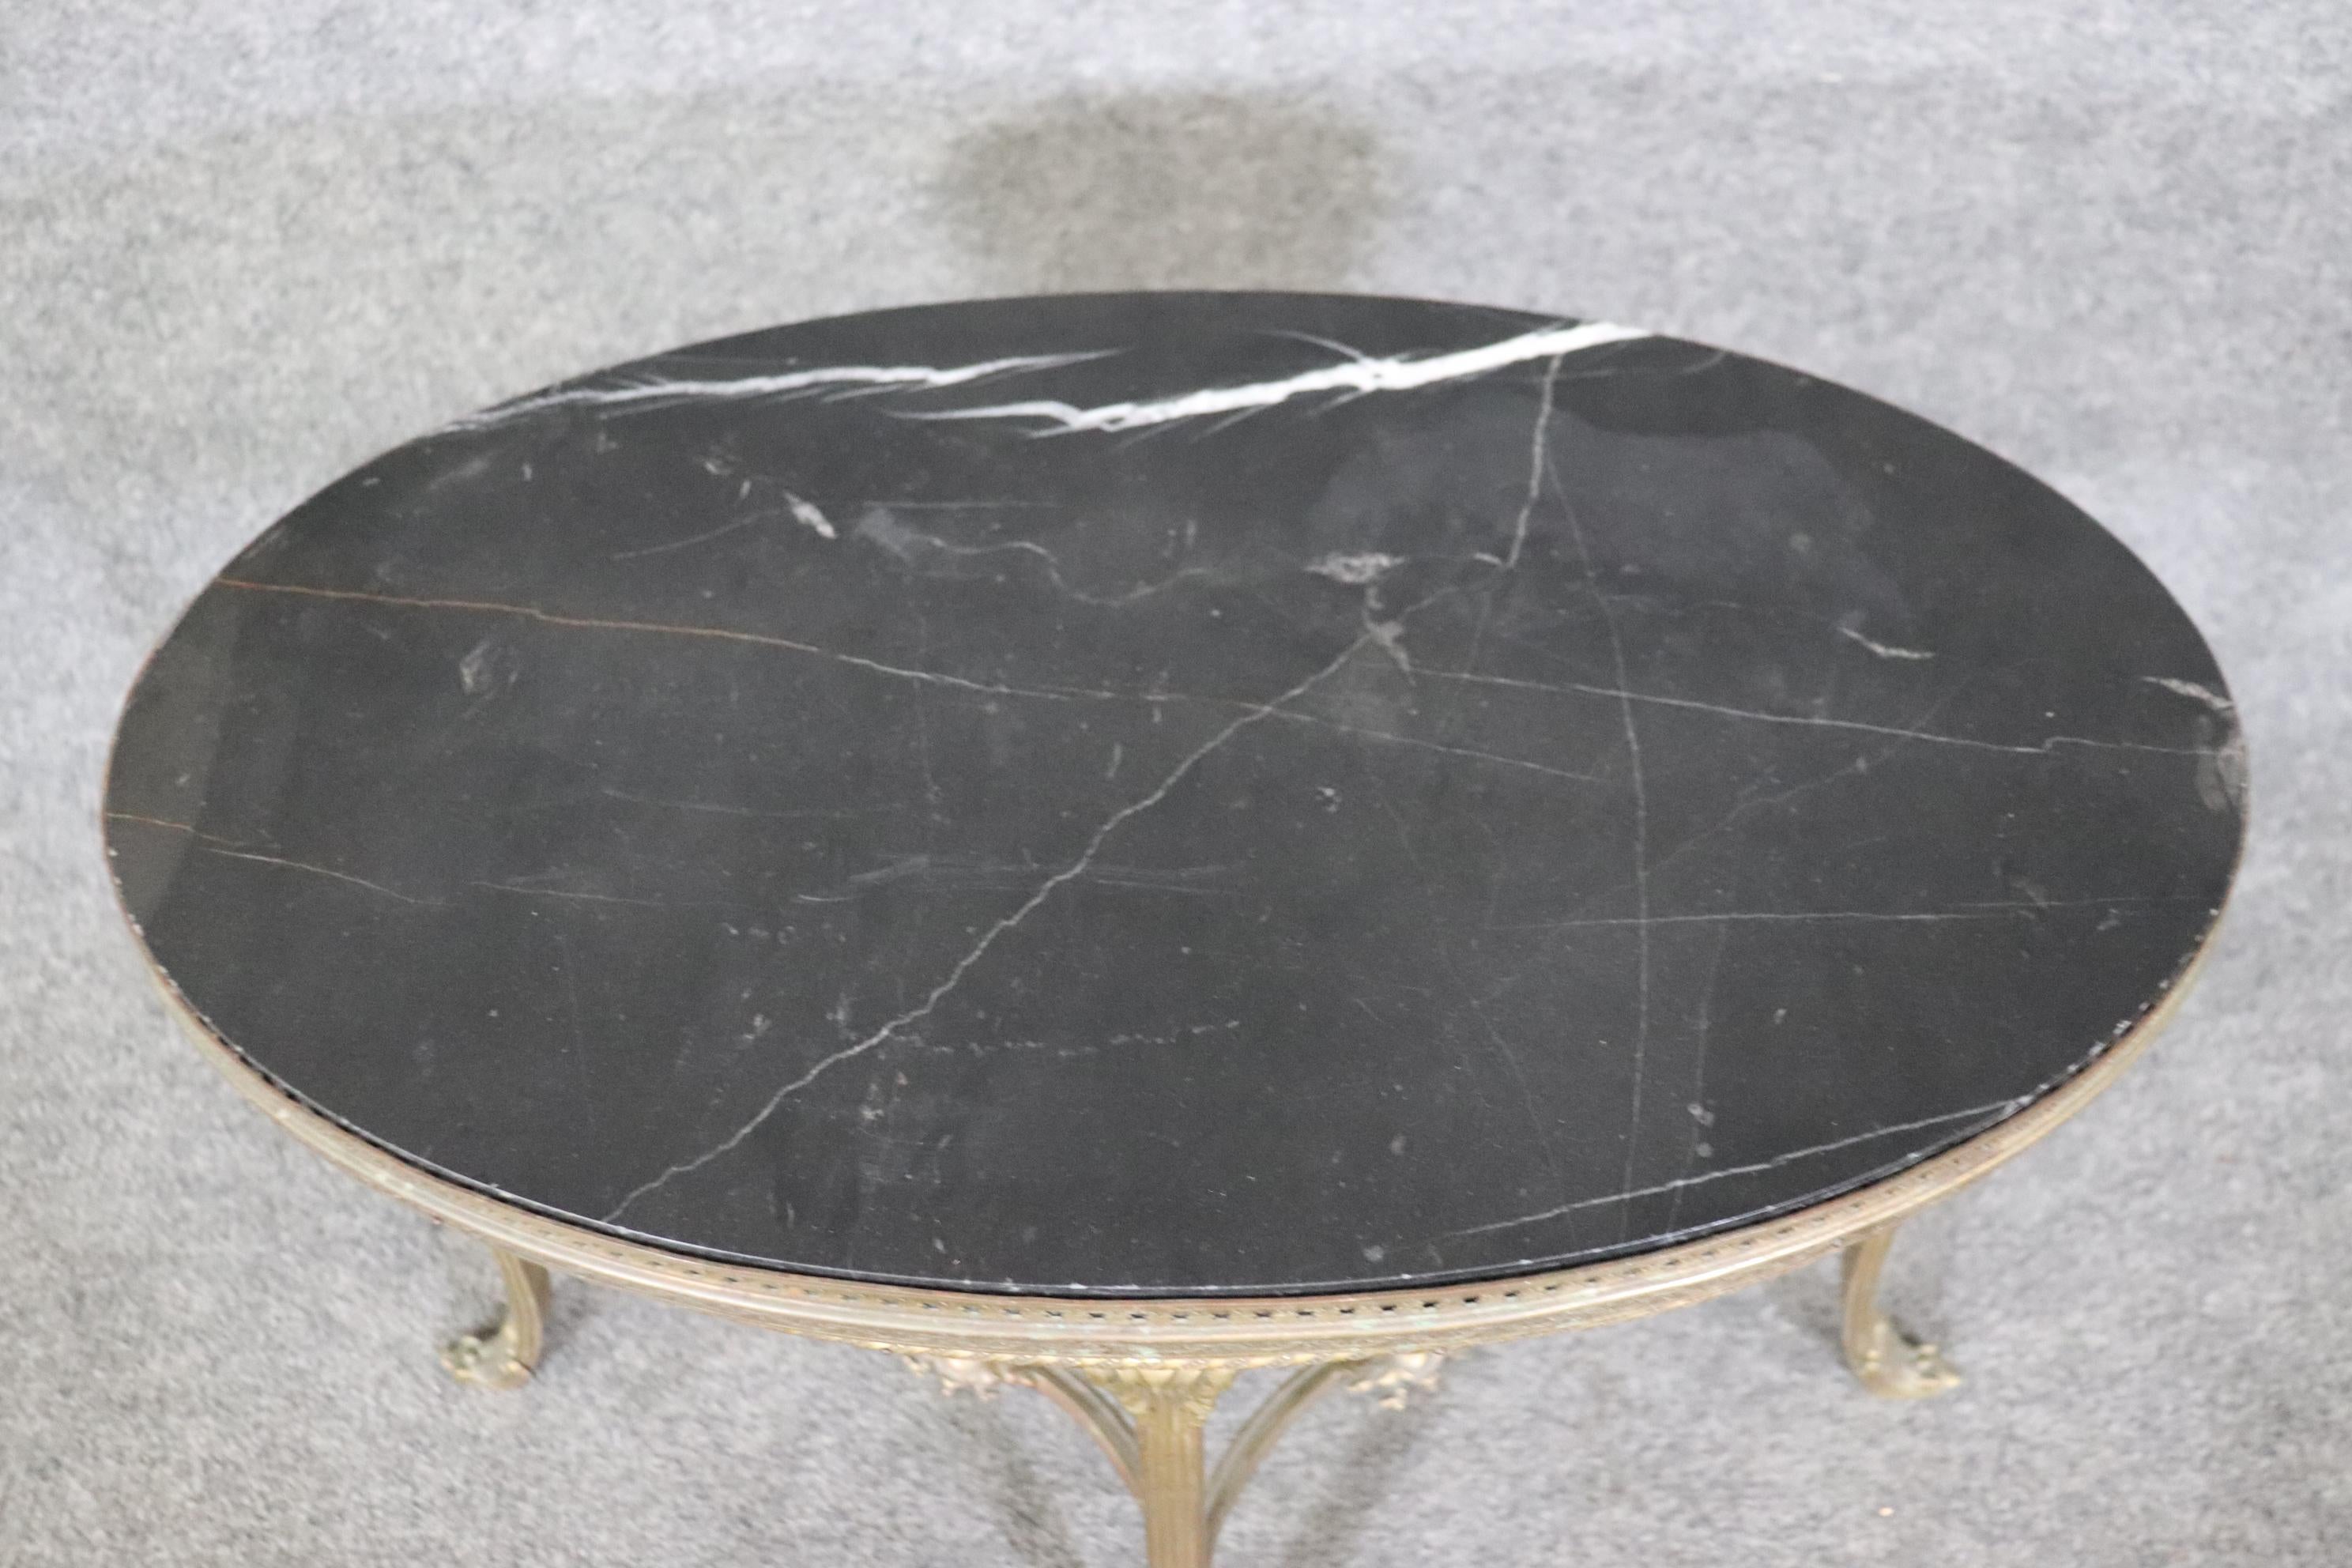 Il s'agit d'une table basse superbement travaillée, d'une taille relativement petite, mais fabriquée en laiton moulé extrêmement durable ou peut-être en bronze, avec un magnifique plateau en marbre noir. La table est en bon état antique et montrera